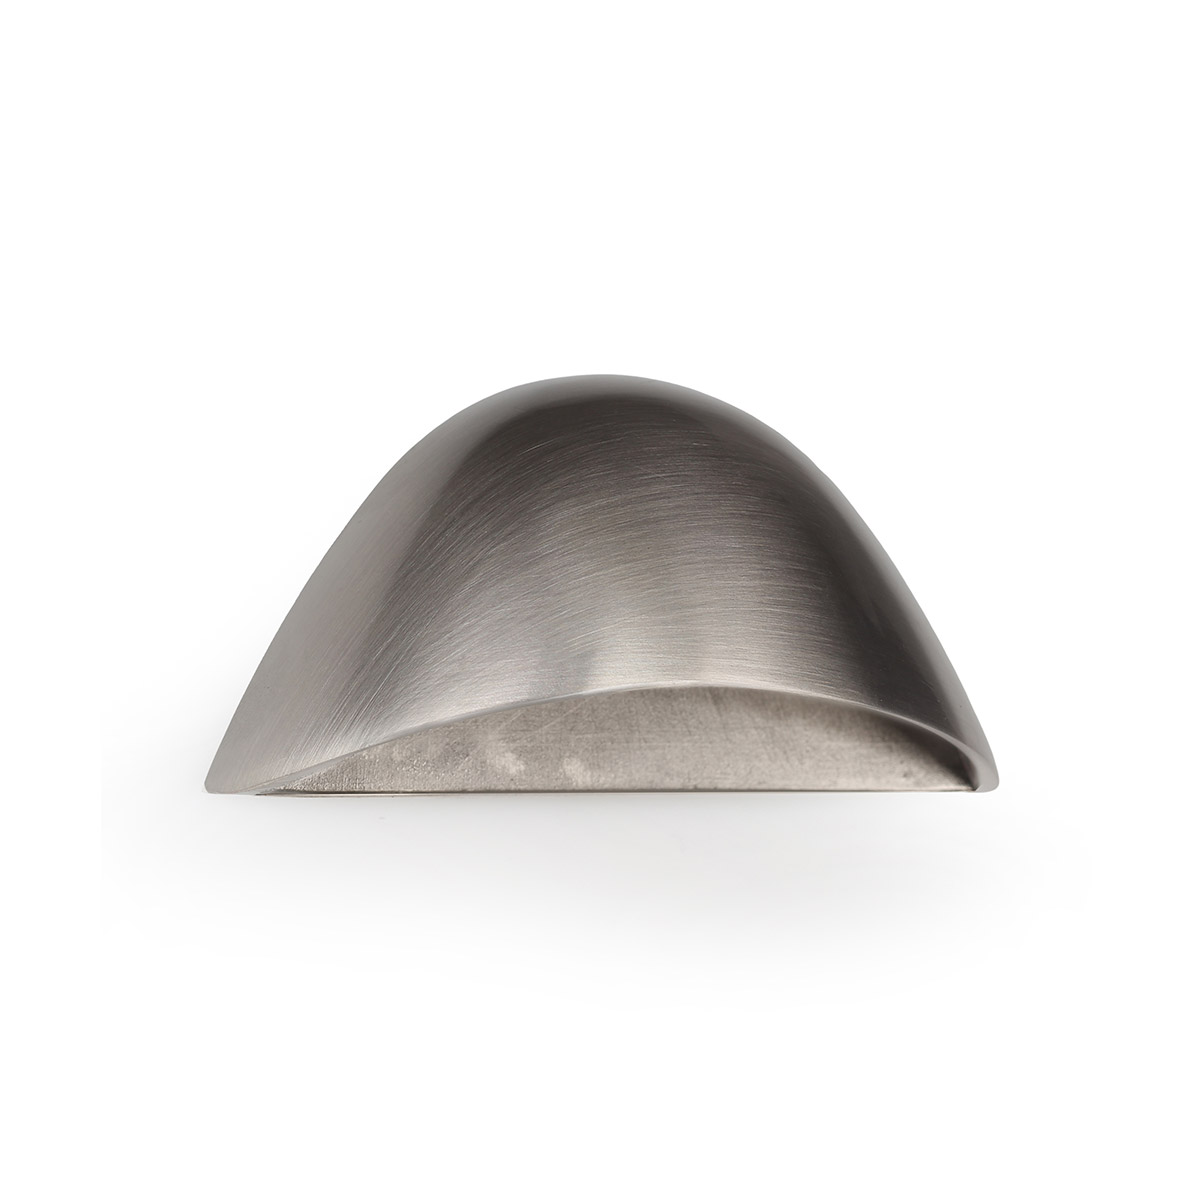 Concha de zamak con acabado níquel satinado, dimensiones:60x30x26mm y entrepuntos:32mm